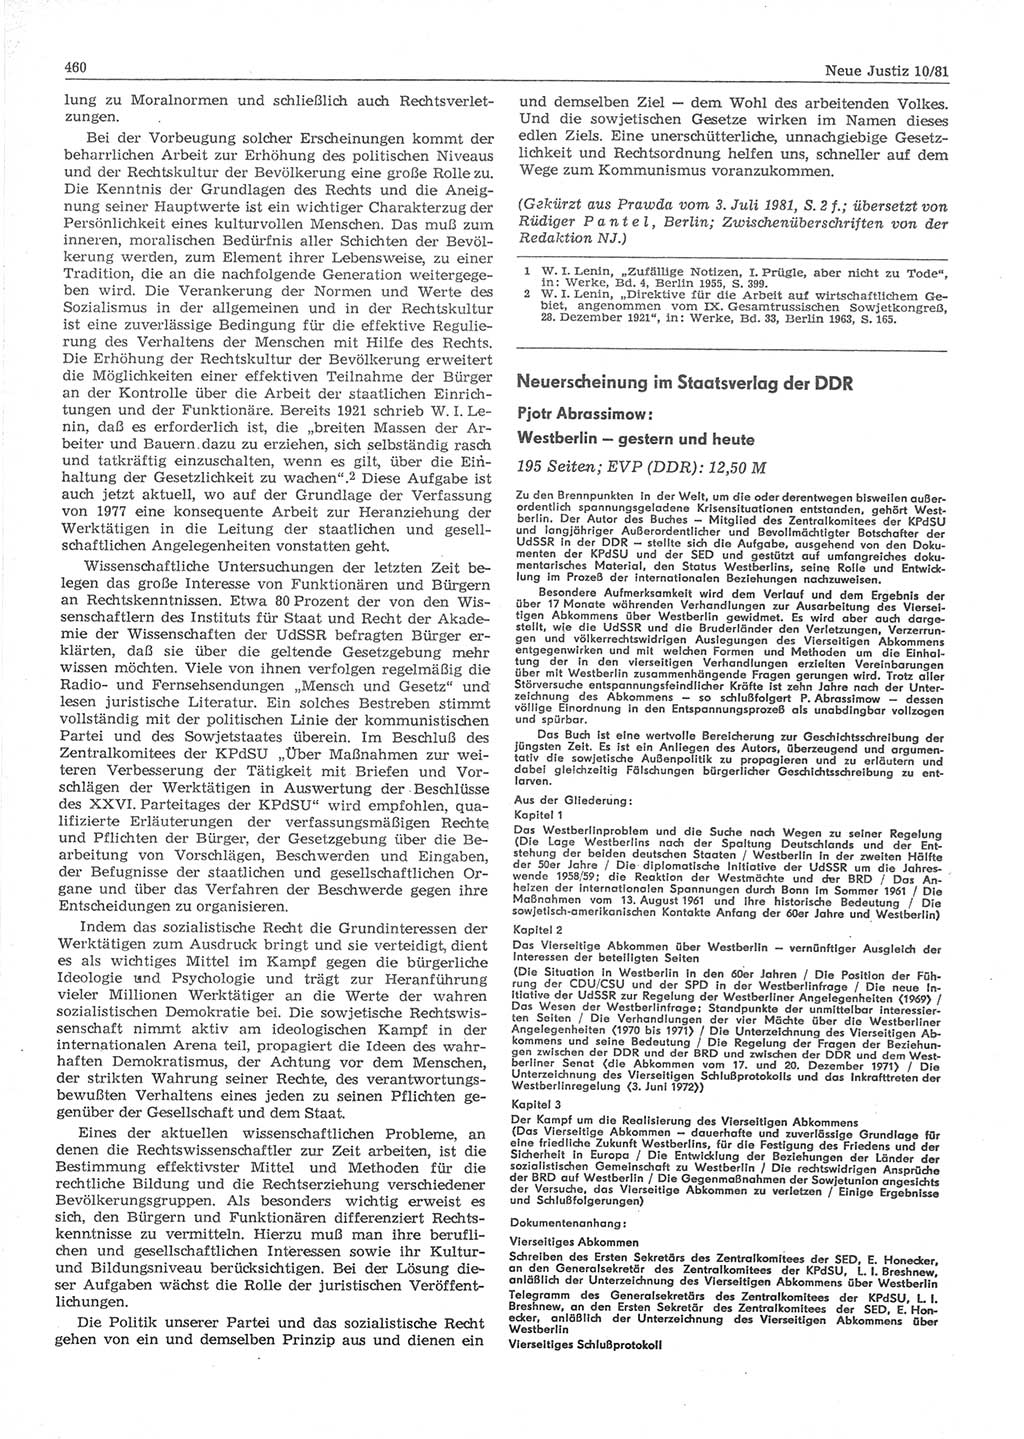 Neue Justiz (NJ), Zeitschrift für sozialistisches Recht und Gesetzlichkeit [Deutsche Demokratische Republik (DDR)], 35. Jahrgang 1981, Seite 460 (NJ DDR 1981, S. 460)